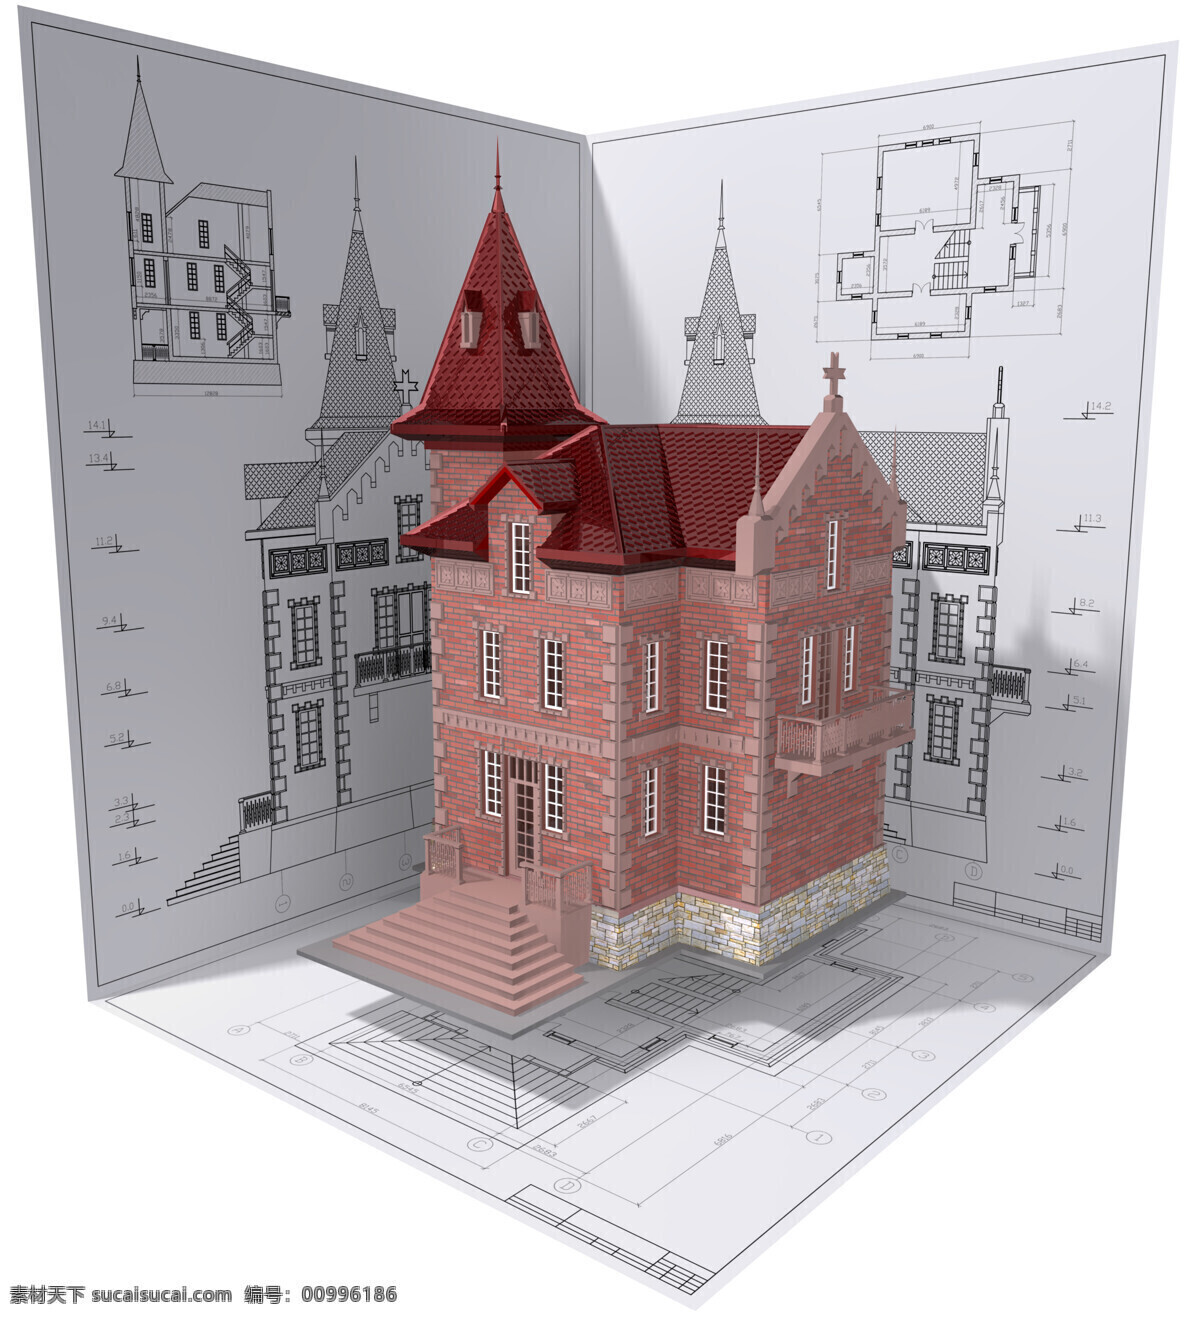 红色 别墅 模型 楼房 房子 建筑 图纸 设计图 建筑设计 环境家居 白色